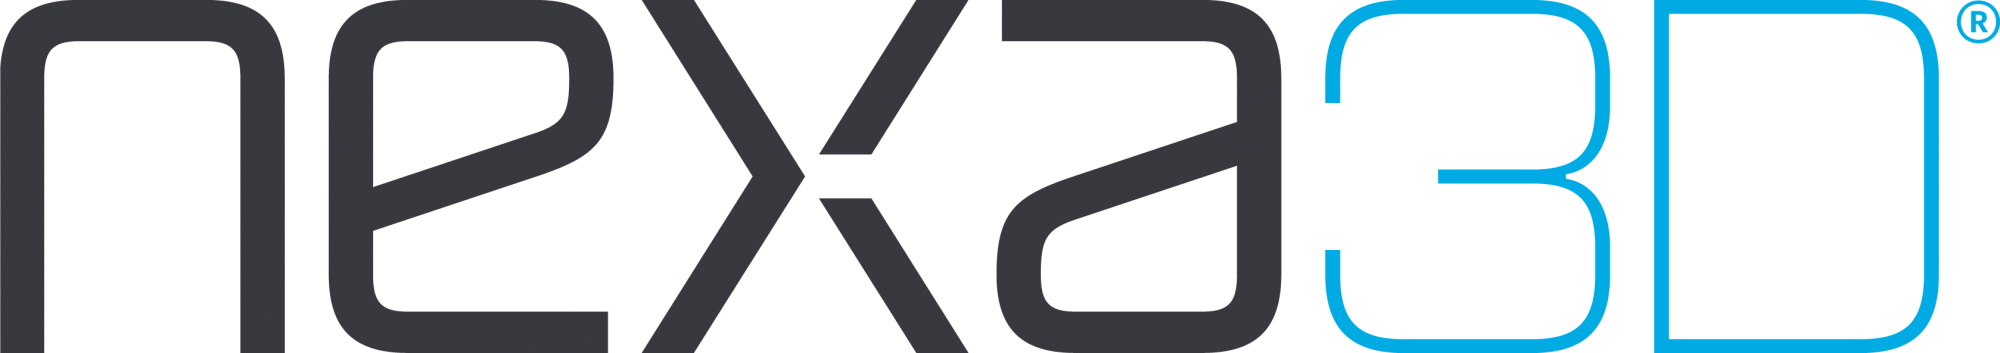 nexa3d logo